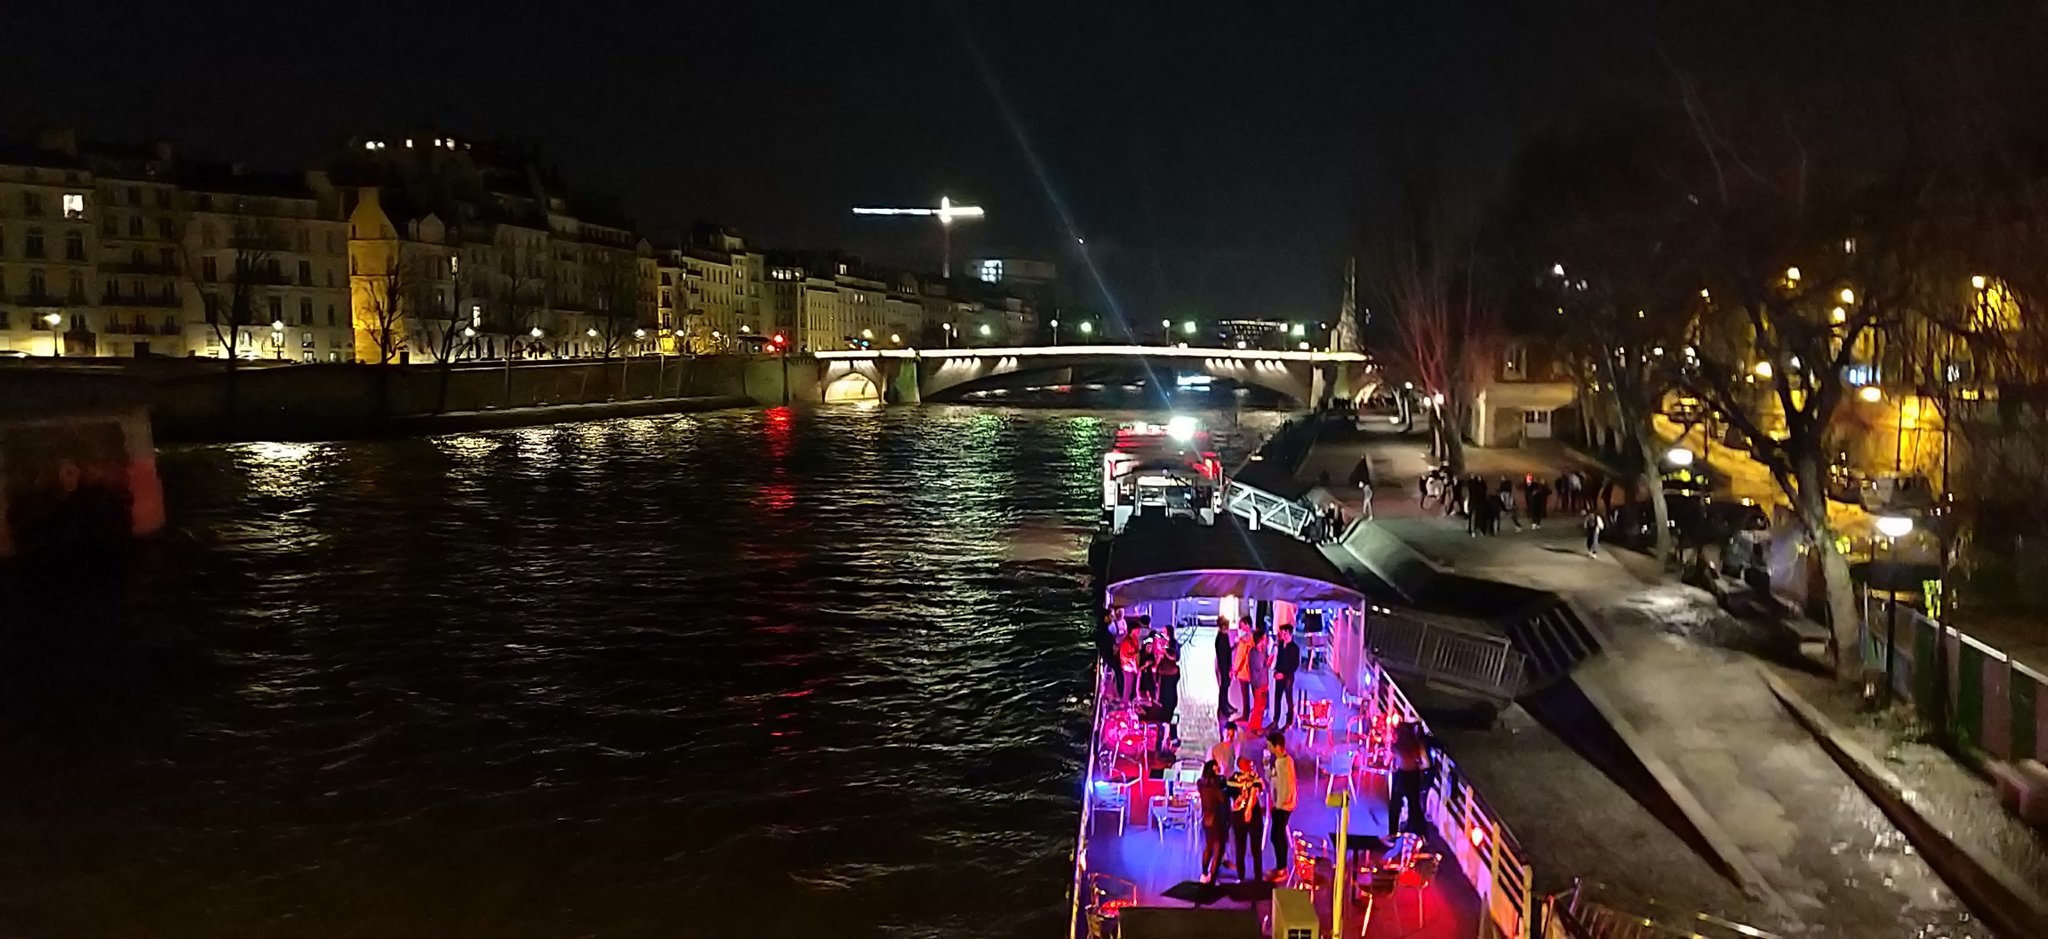 Photo de nuit prise sur un quai de la Seine. Au premier plan, une péniche pleine de lumières colorées.